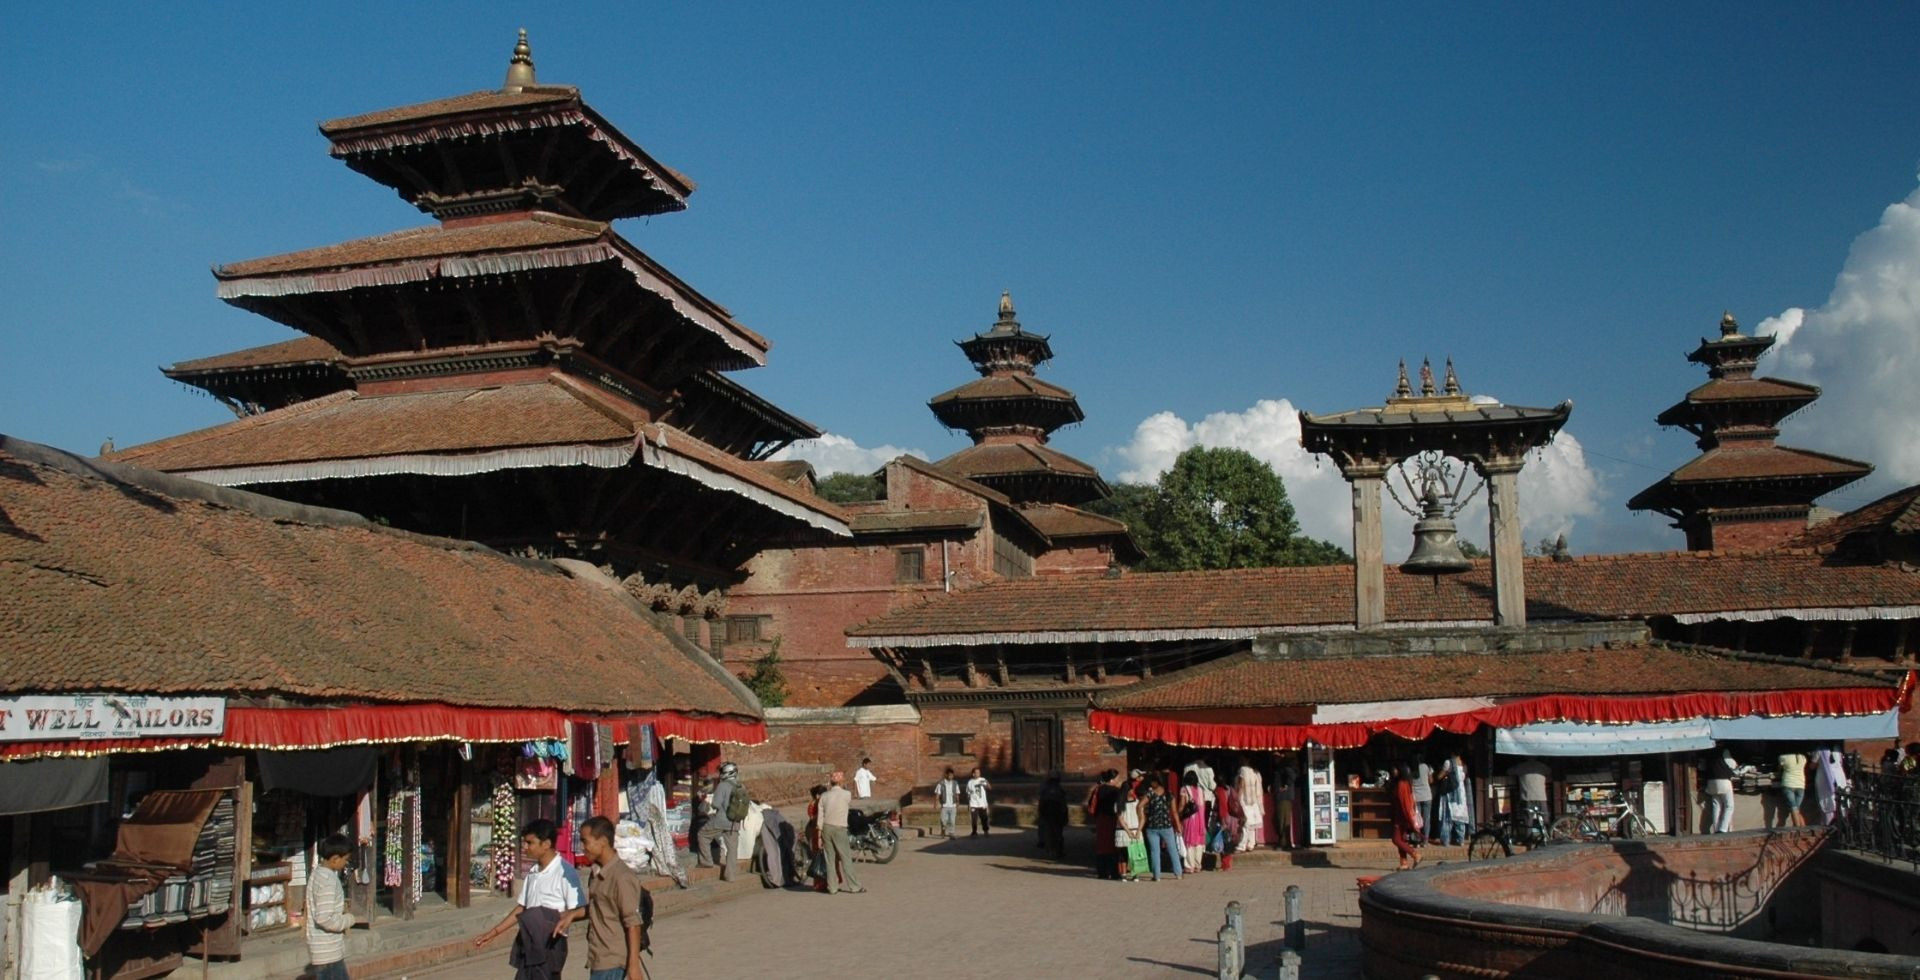 Fetsival in Nepal